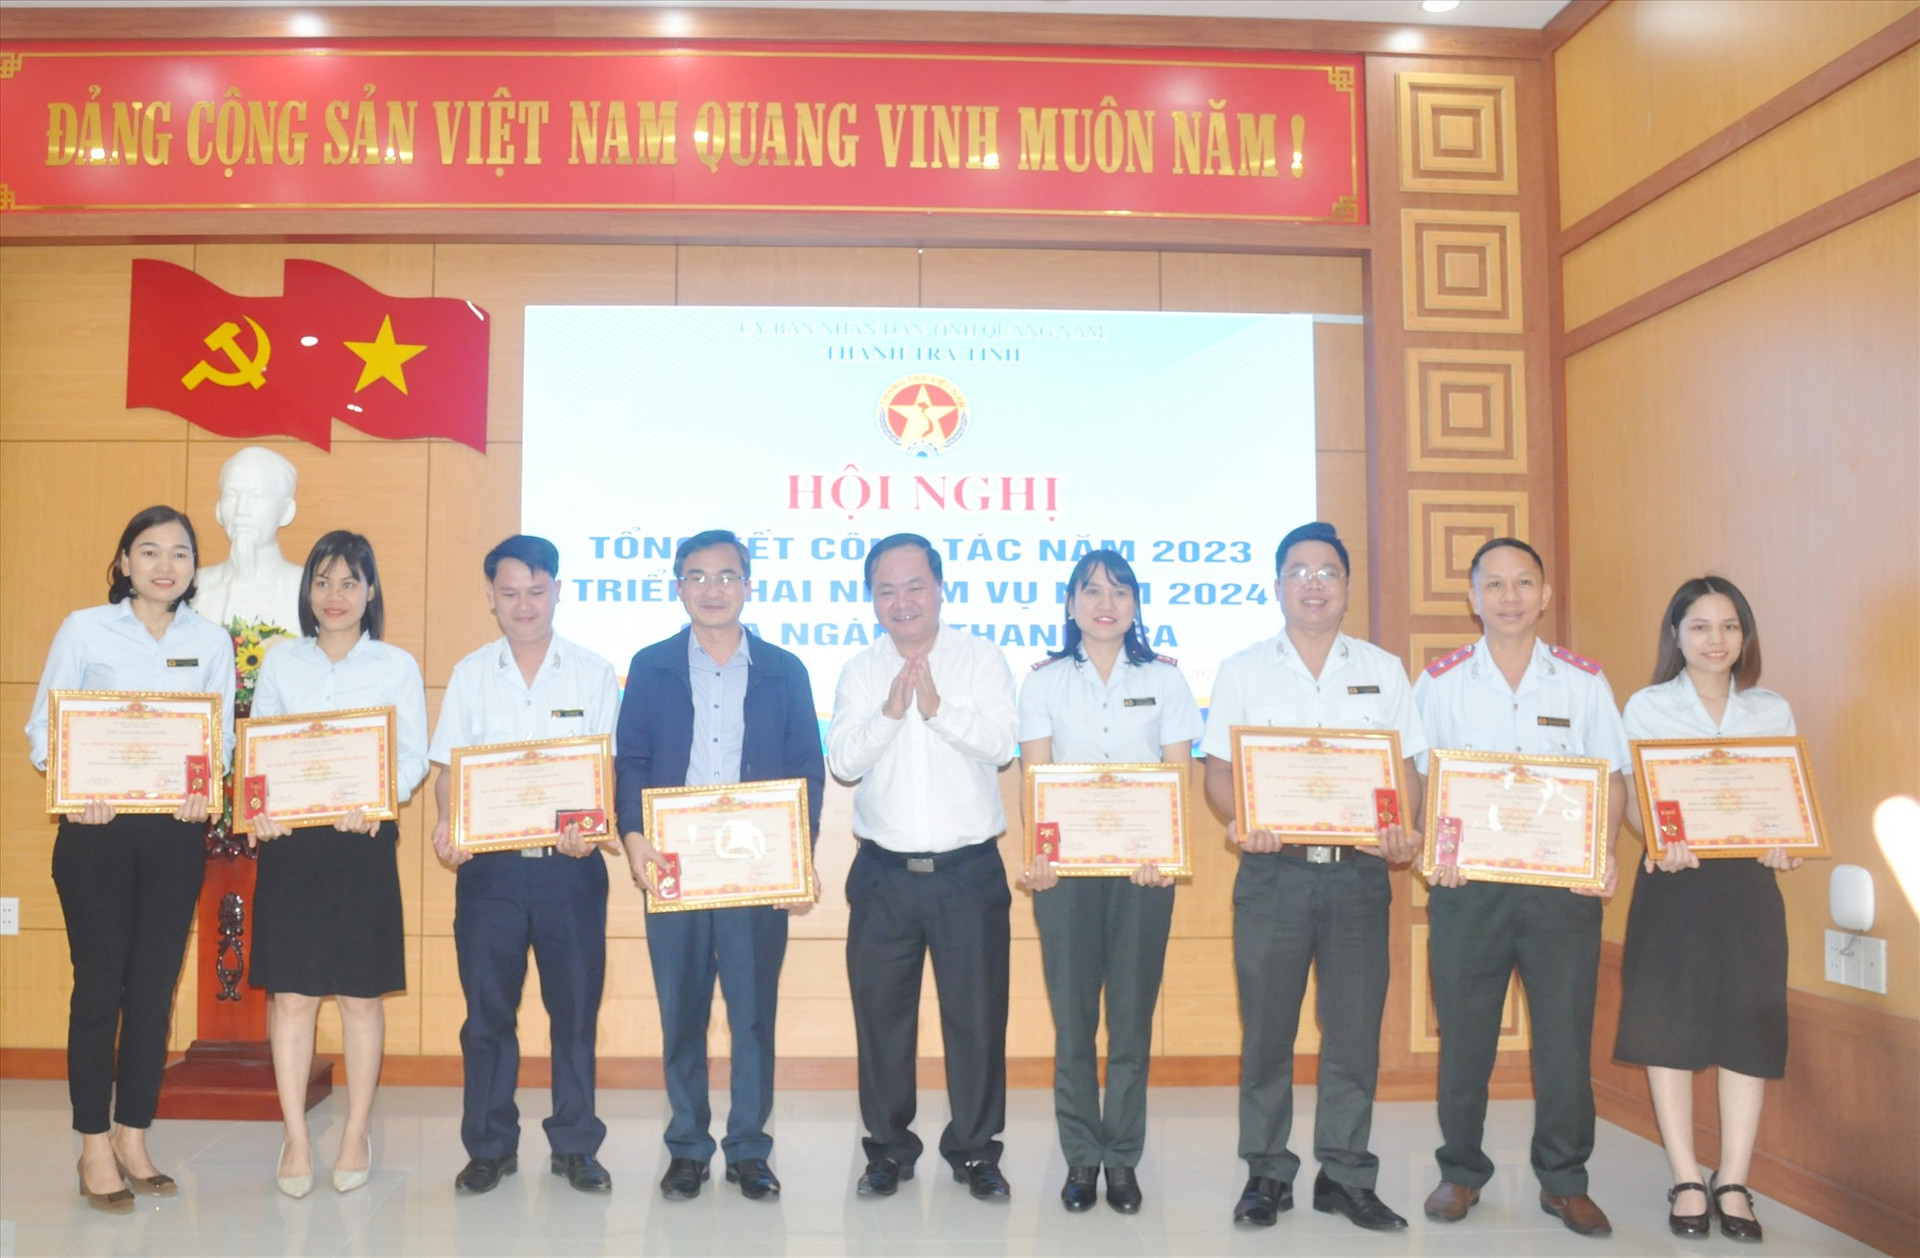 Phó Chủ tịch UBND tỉnh Nguyễn Hồng Quang trao tặng Kỷ niệm chương vì sự nghiệp Thanh tra cho các cá nhân. Ảnh: N.Đ